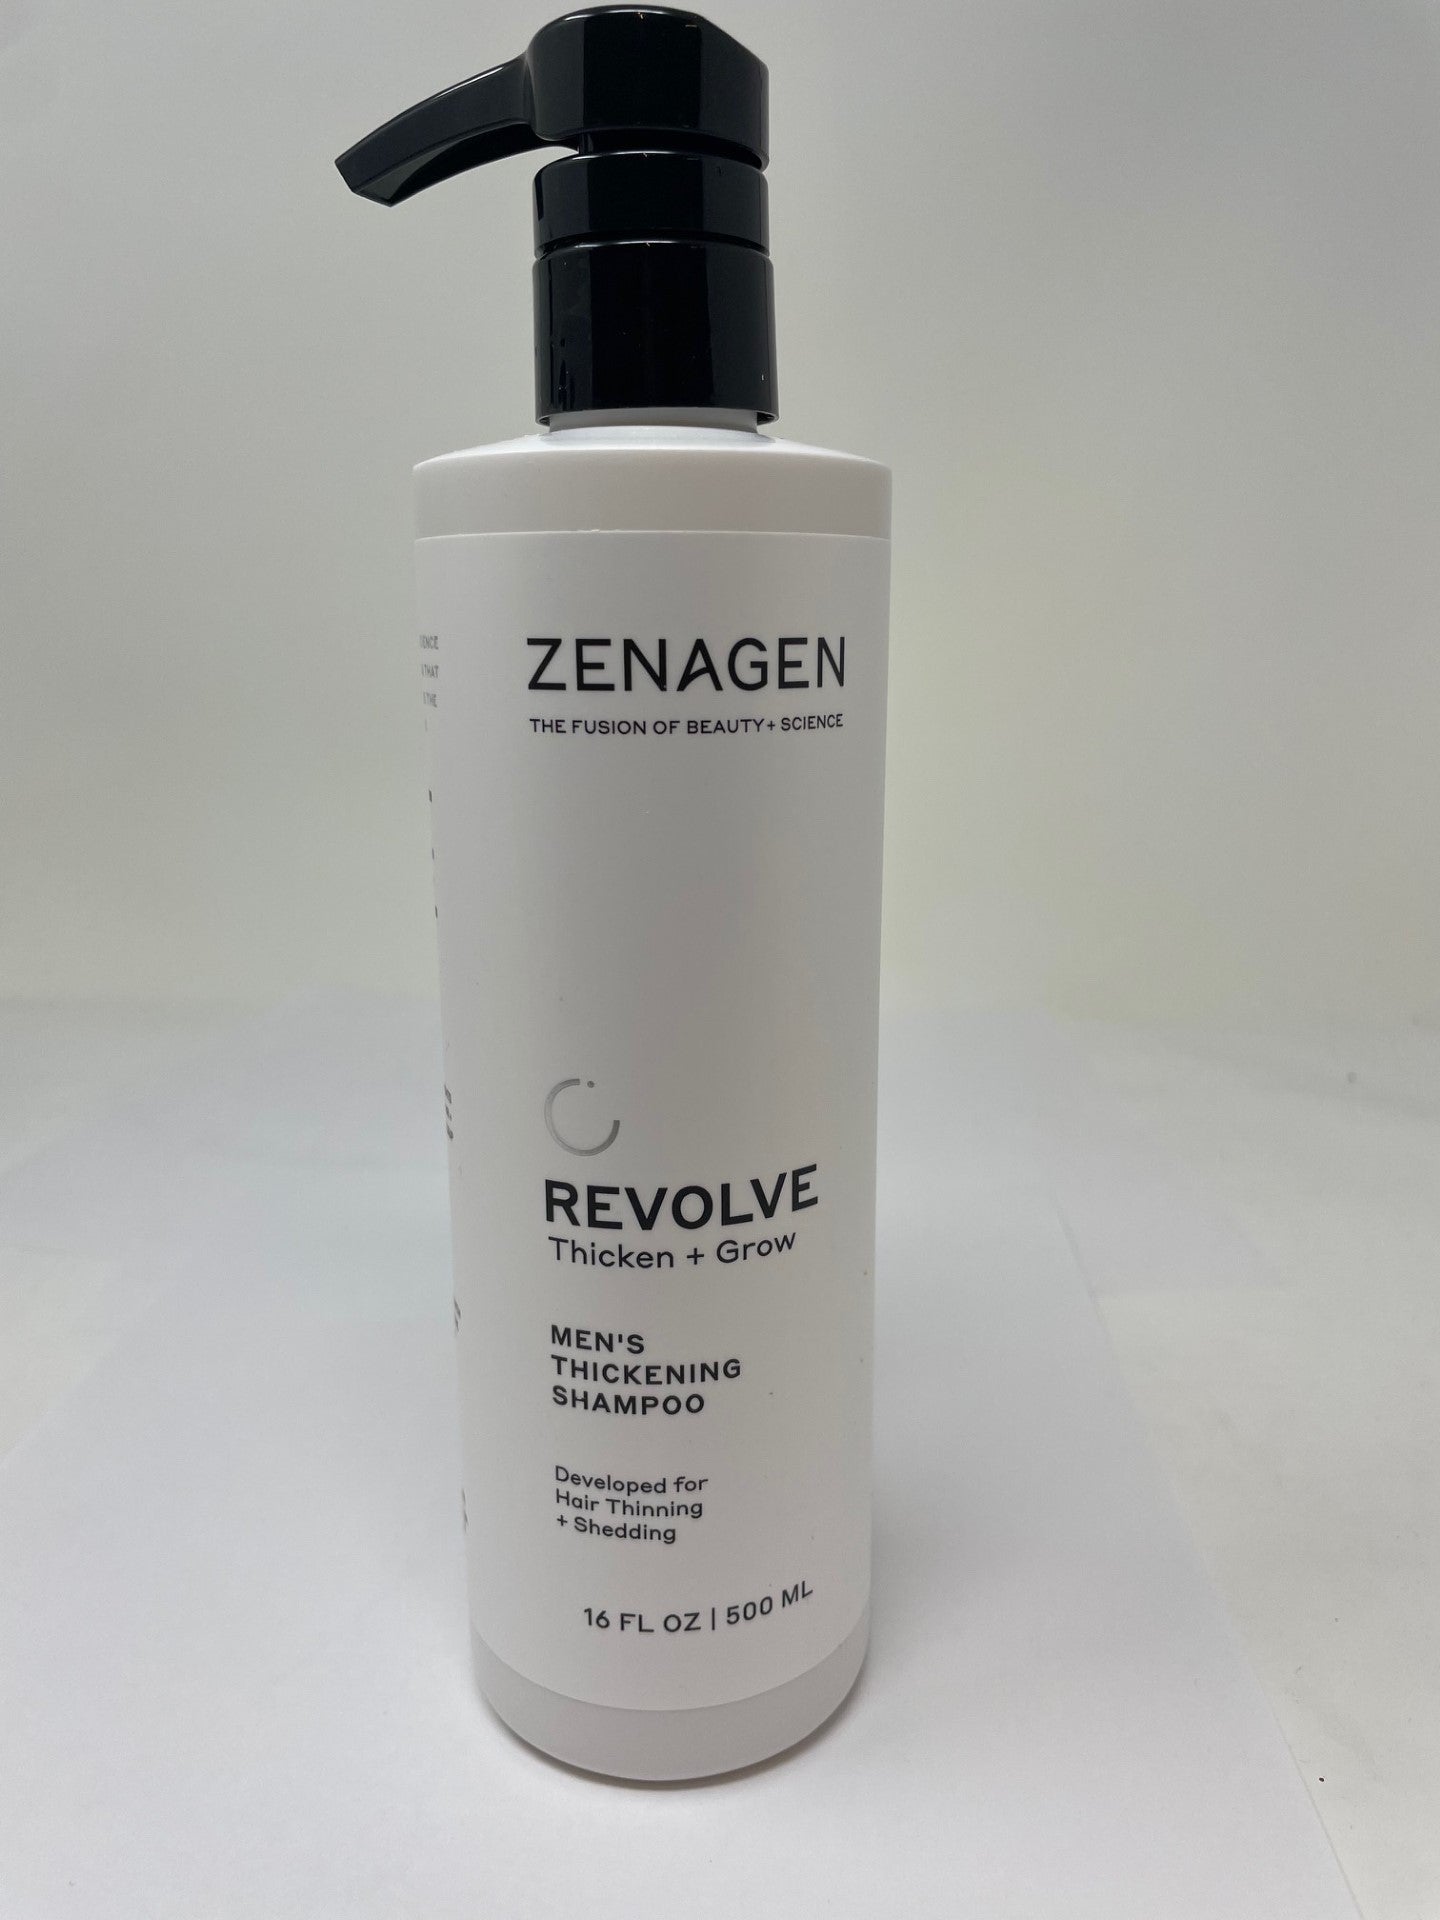 Zenagen Revolve Shampoo Treatment for Men 16 oz